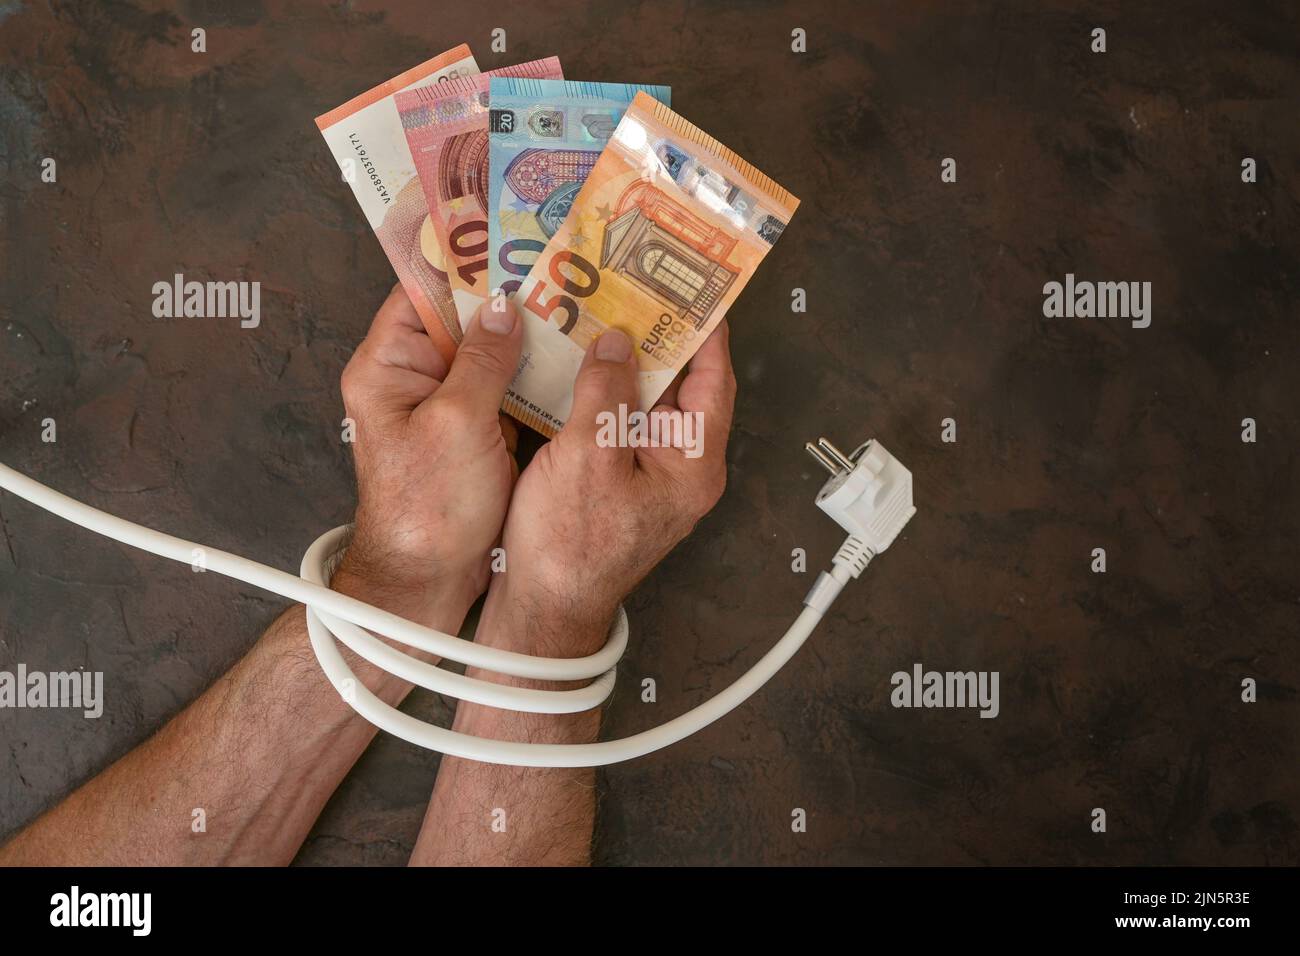 Mani di un uomo con banconote in euro e sono legati con un cavo di alimentazione elettrica, concetto per l'aumento dei costi dell'elettricità e risparmio energetico, backgrou scuro Foto Stock